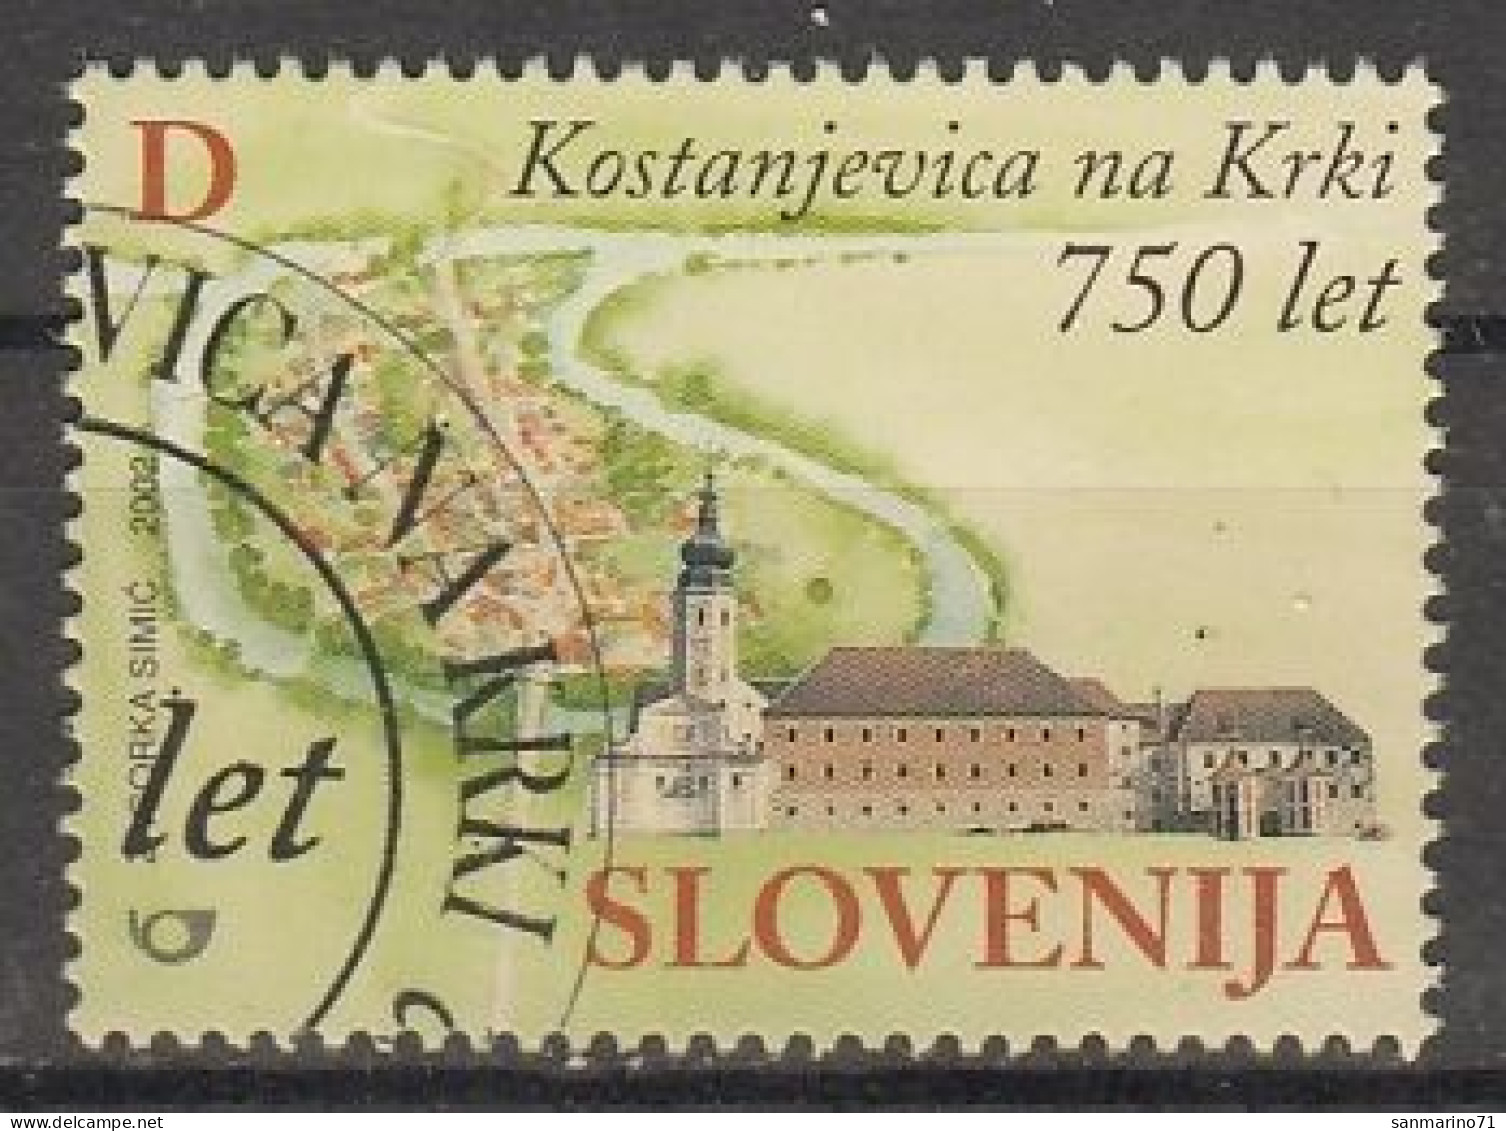 SLOVENIA 395,used,hinged - Slovénie